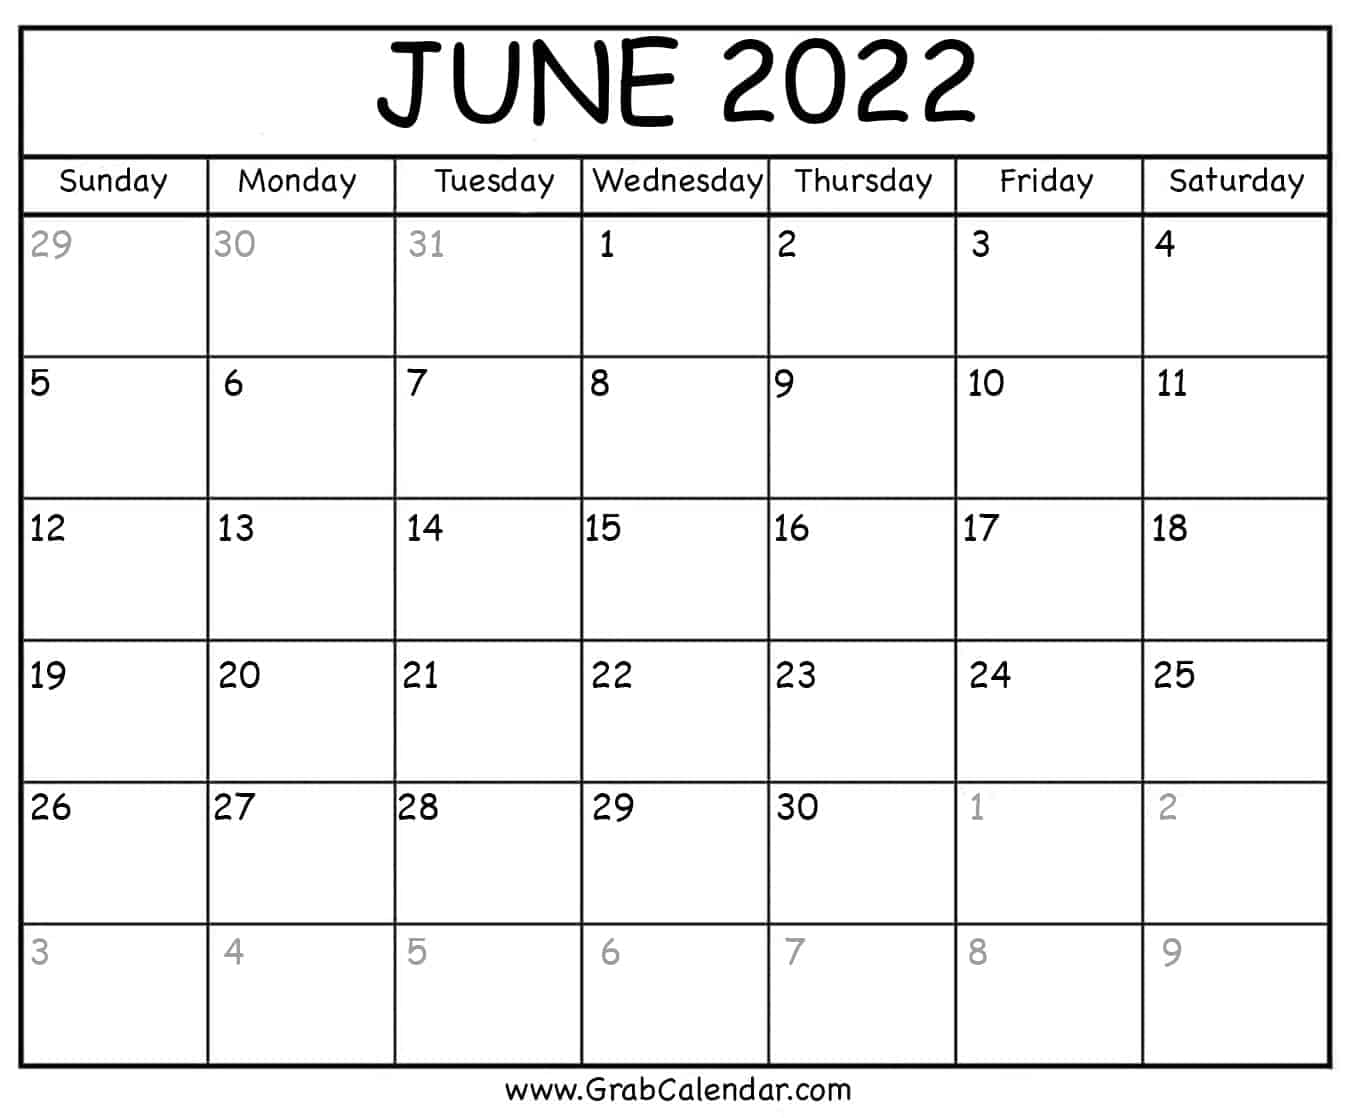 June 24 2022 Calendar Printable June 2022 Calendar